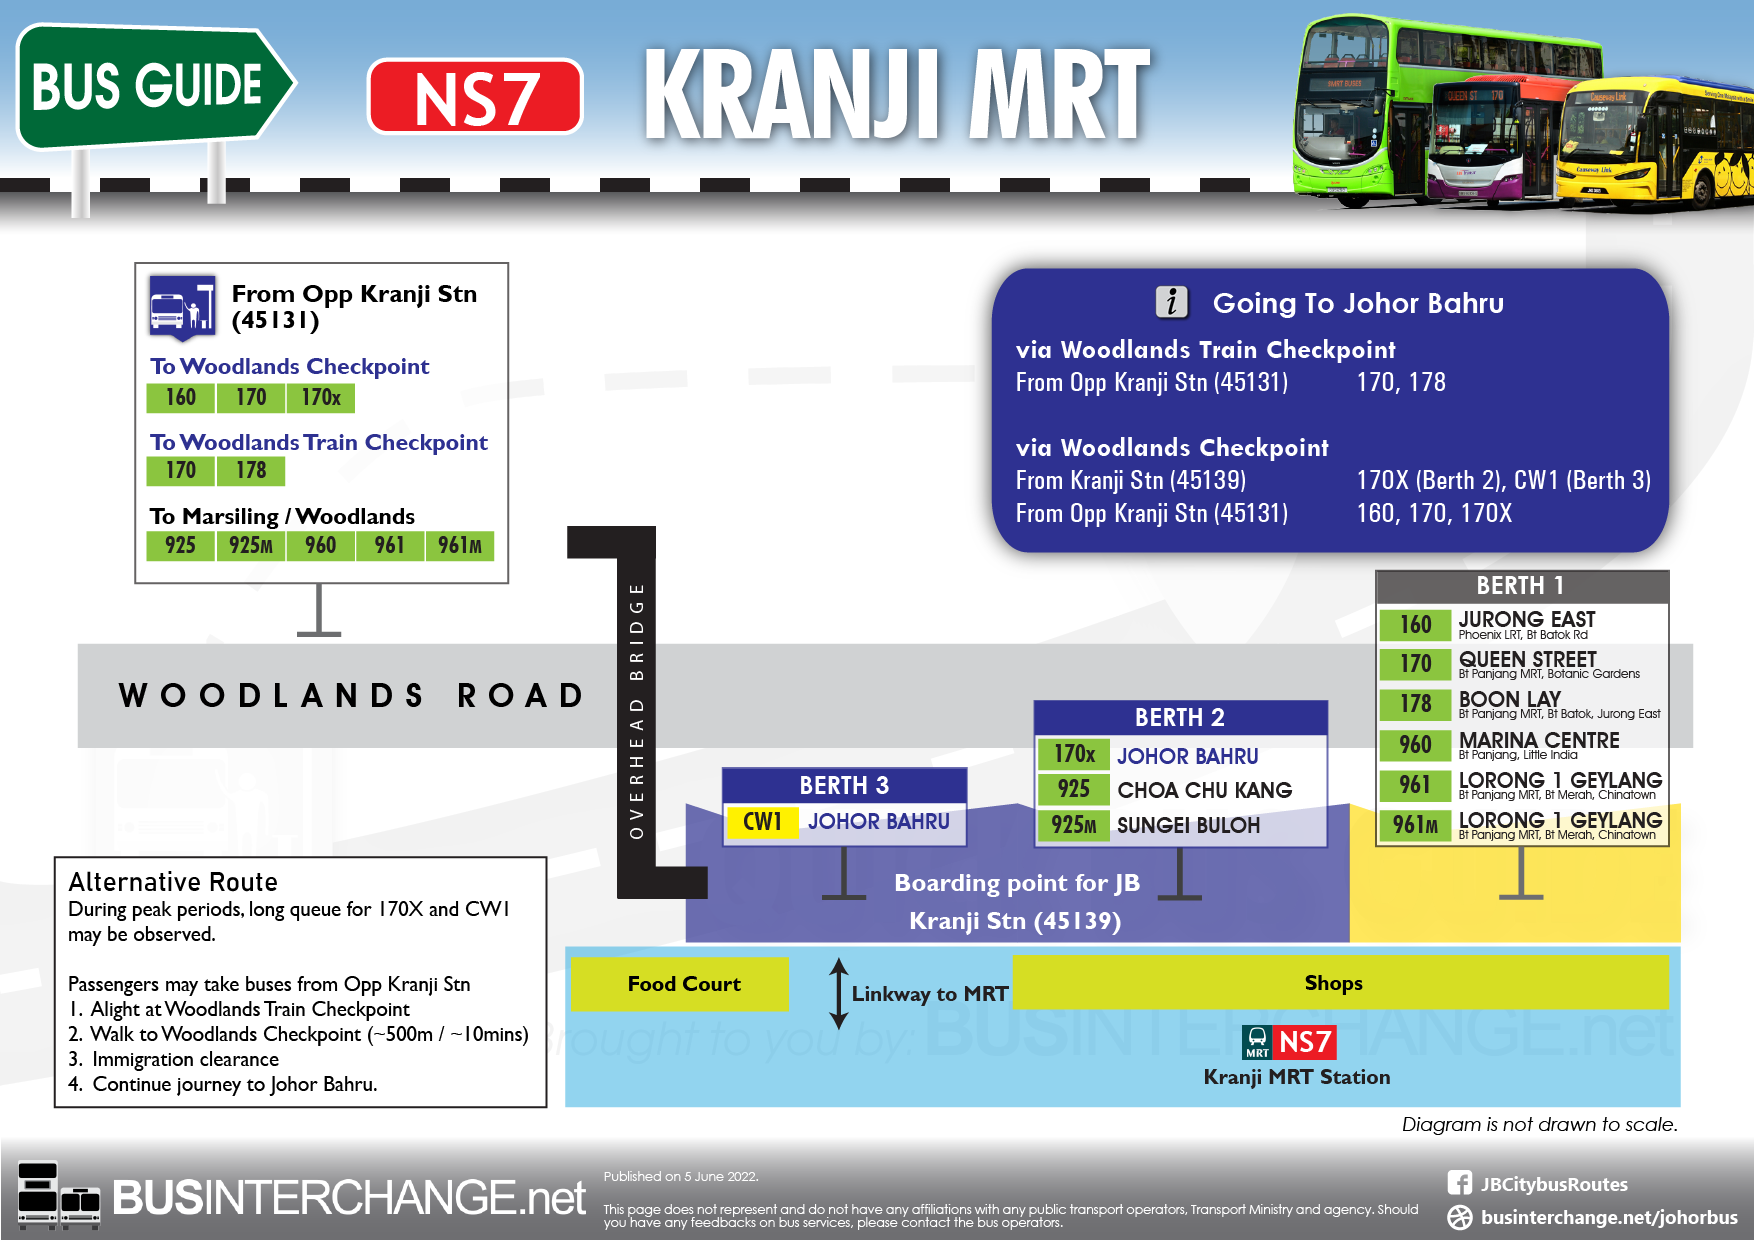 Bus guide from Kranji MRT station